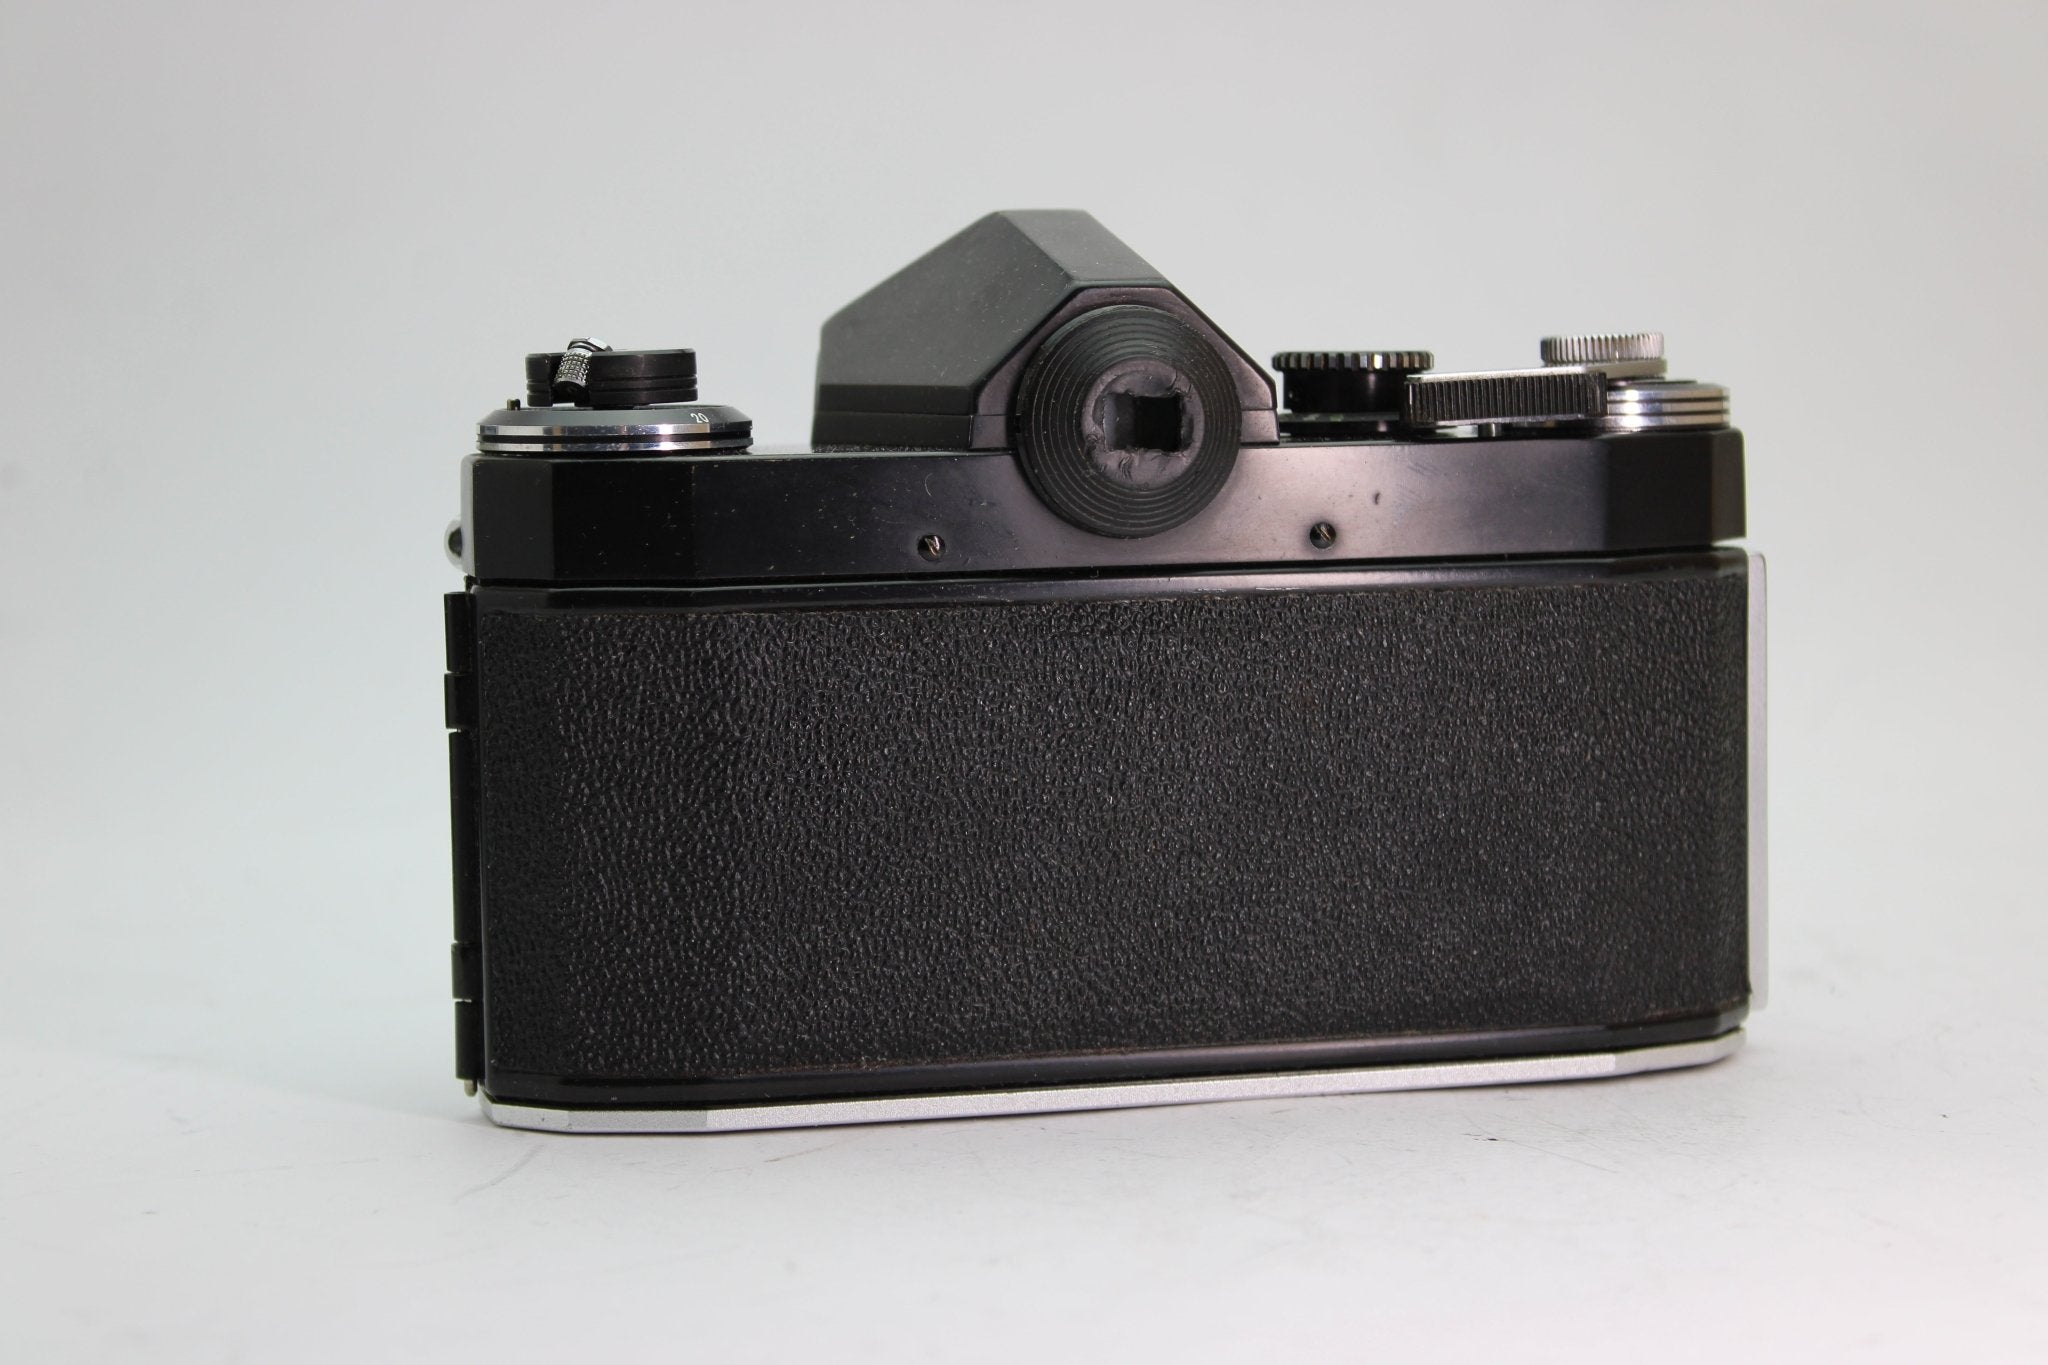 Pentor Super TL + 29mm f/2.8 - Pentor